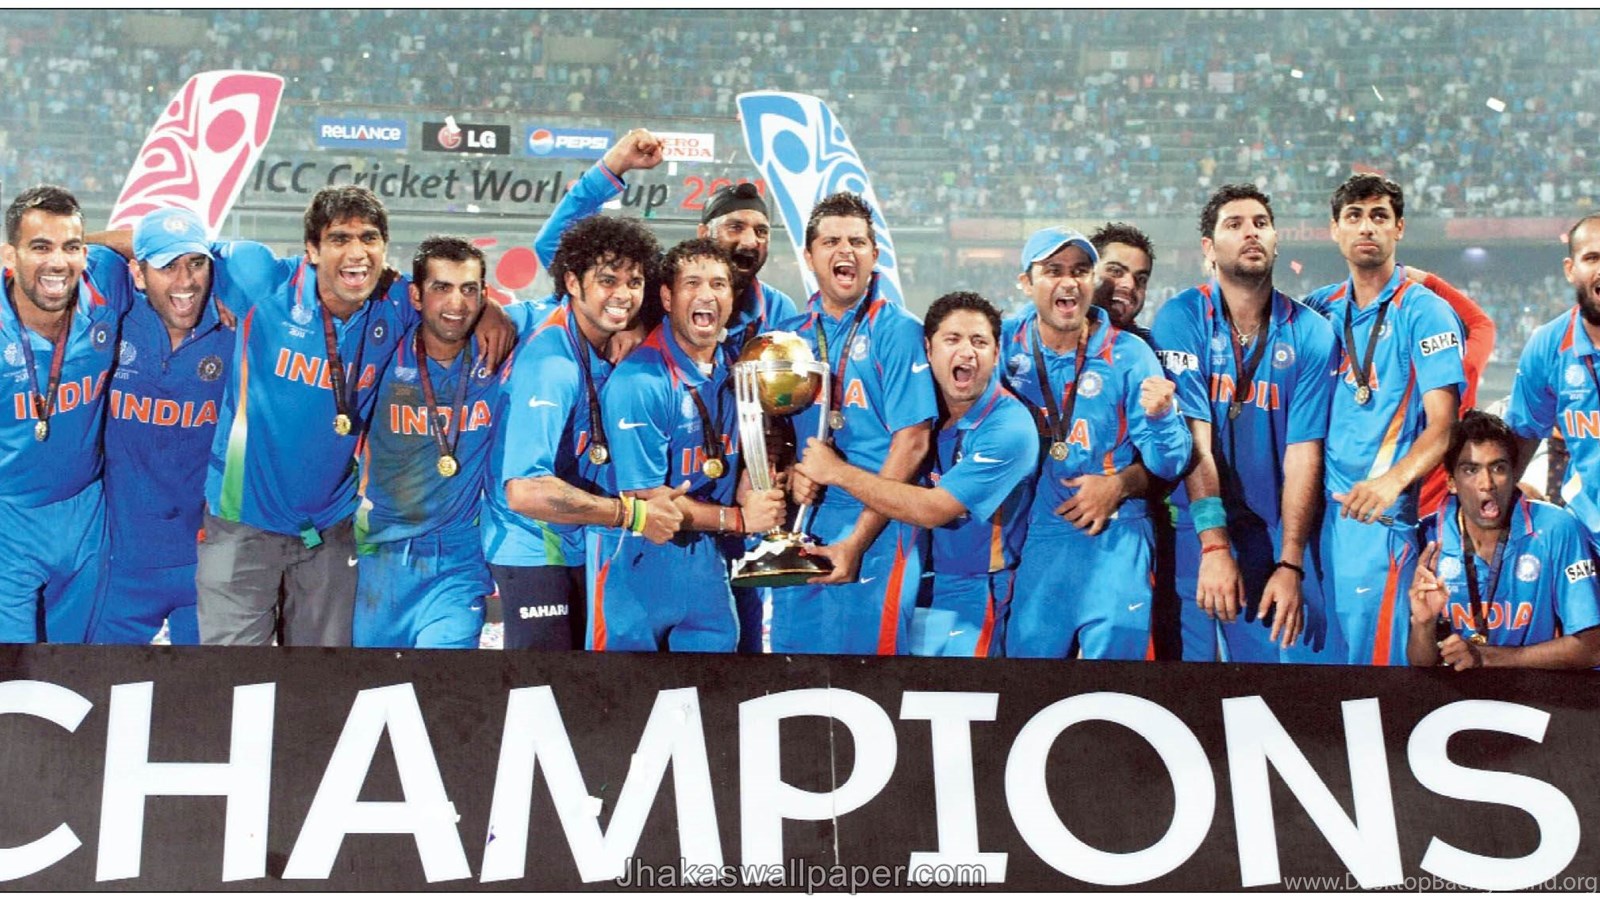 インドのクリケットチーム壁紙,チーム,クルー,スポーツ